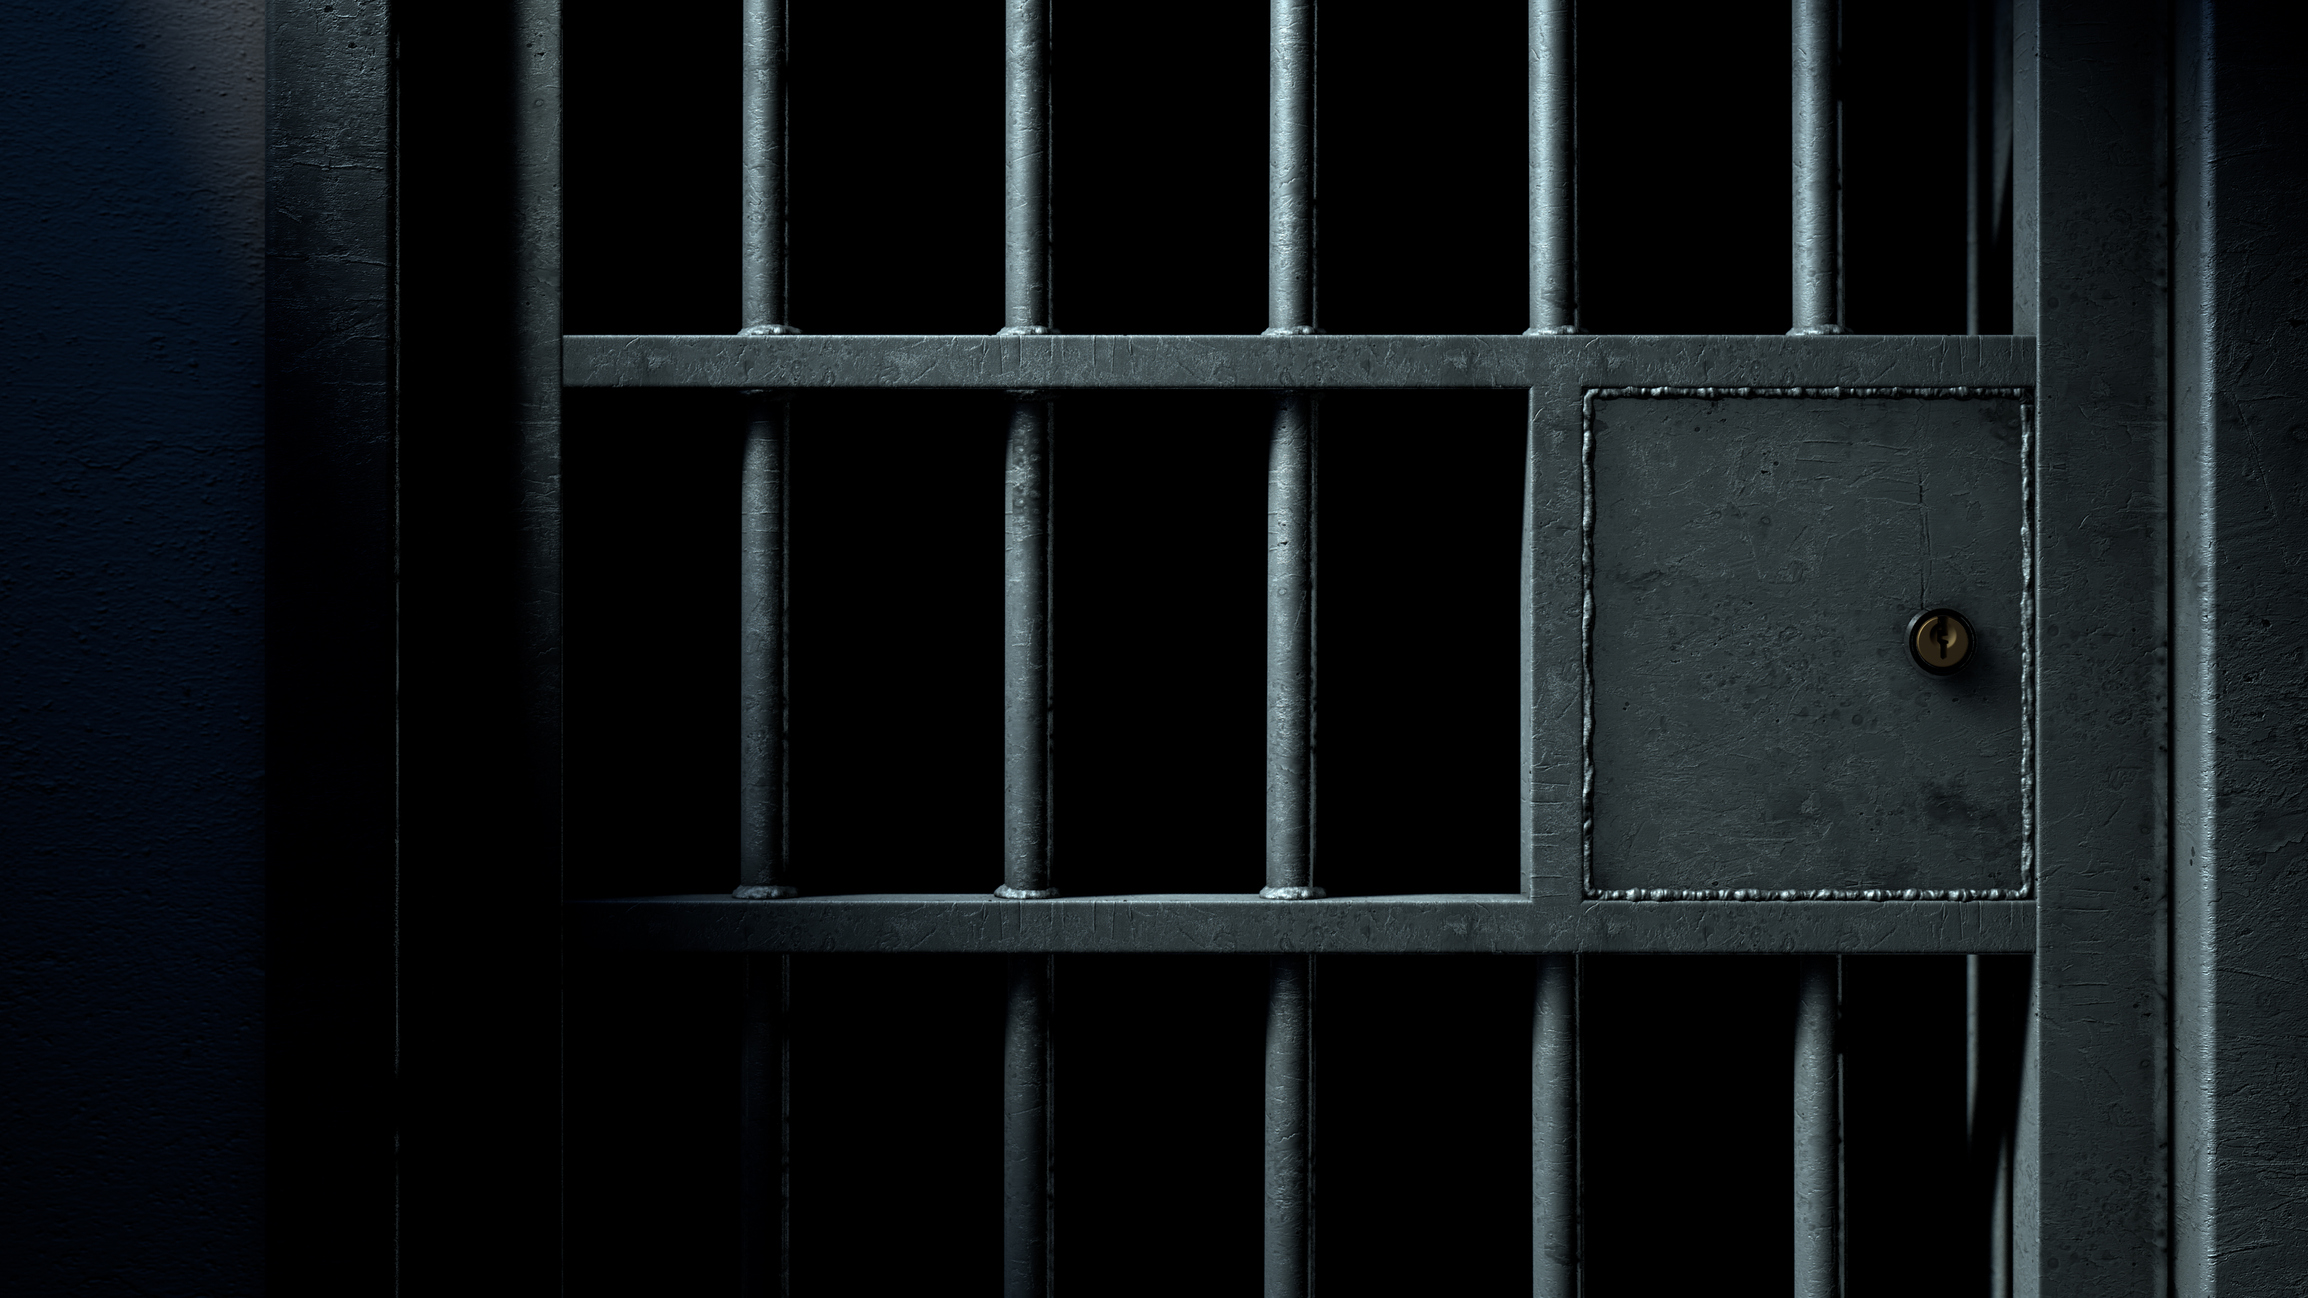 ‘Smart on crime’: New push for jail alternatives